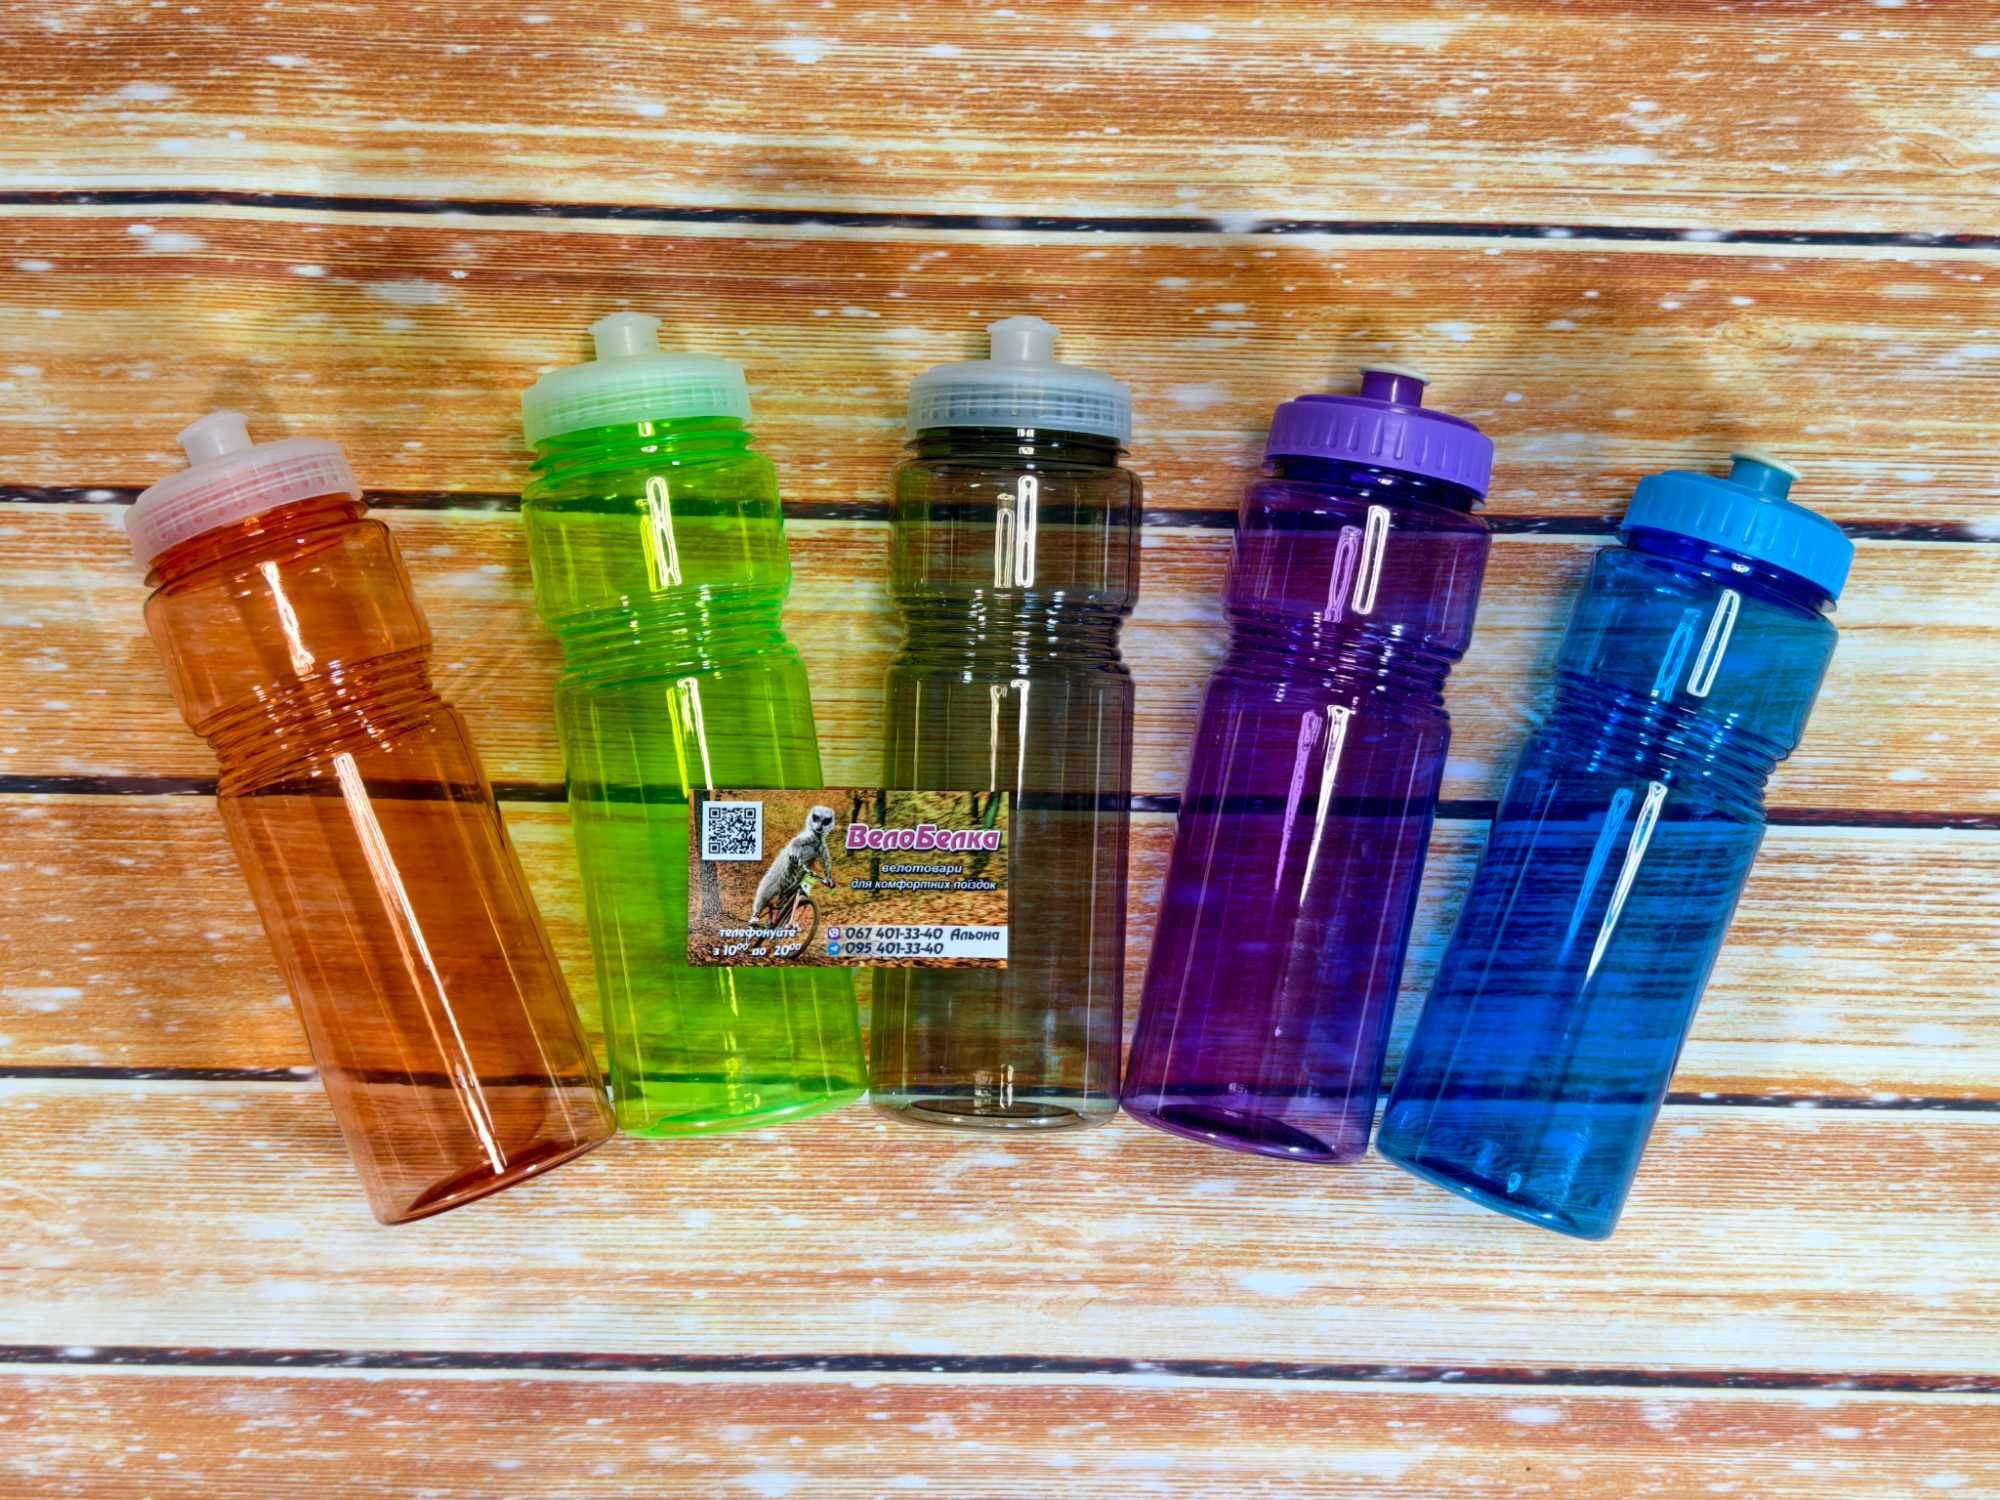 Фляга велосипедна, пляшка для води, велофляга, фляга вело, бутилка